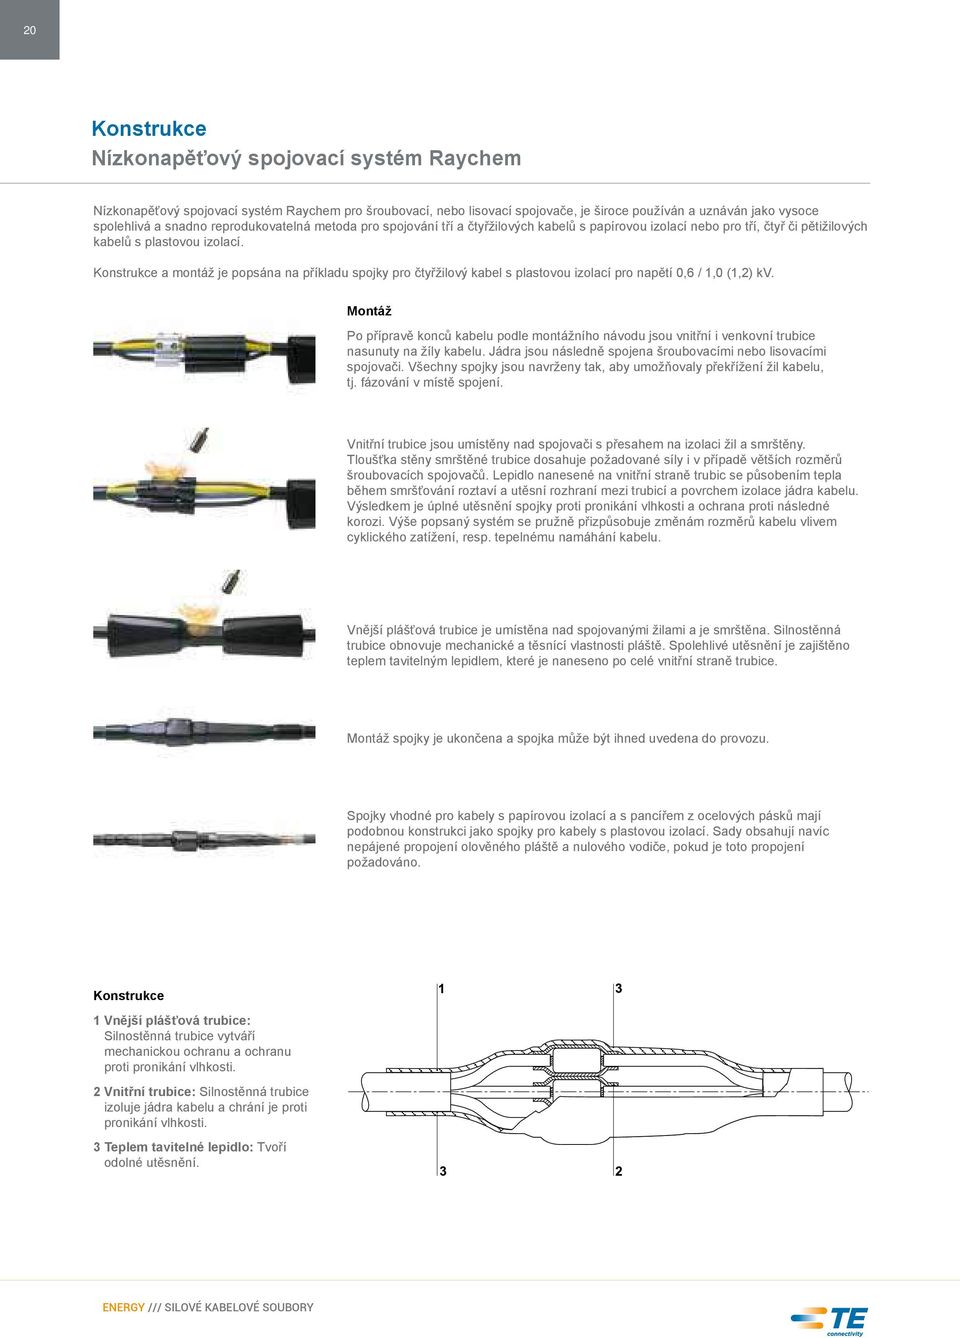 Konstrukce a montáž je popsána na příkladu spojky pro čtyřžilový kabel s plastovou izolací pro napětí 0,6 / 1,0 (1,2) kv.